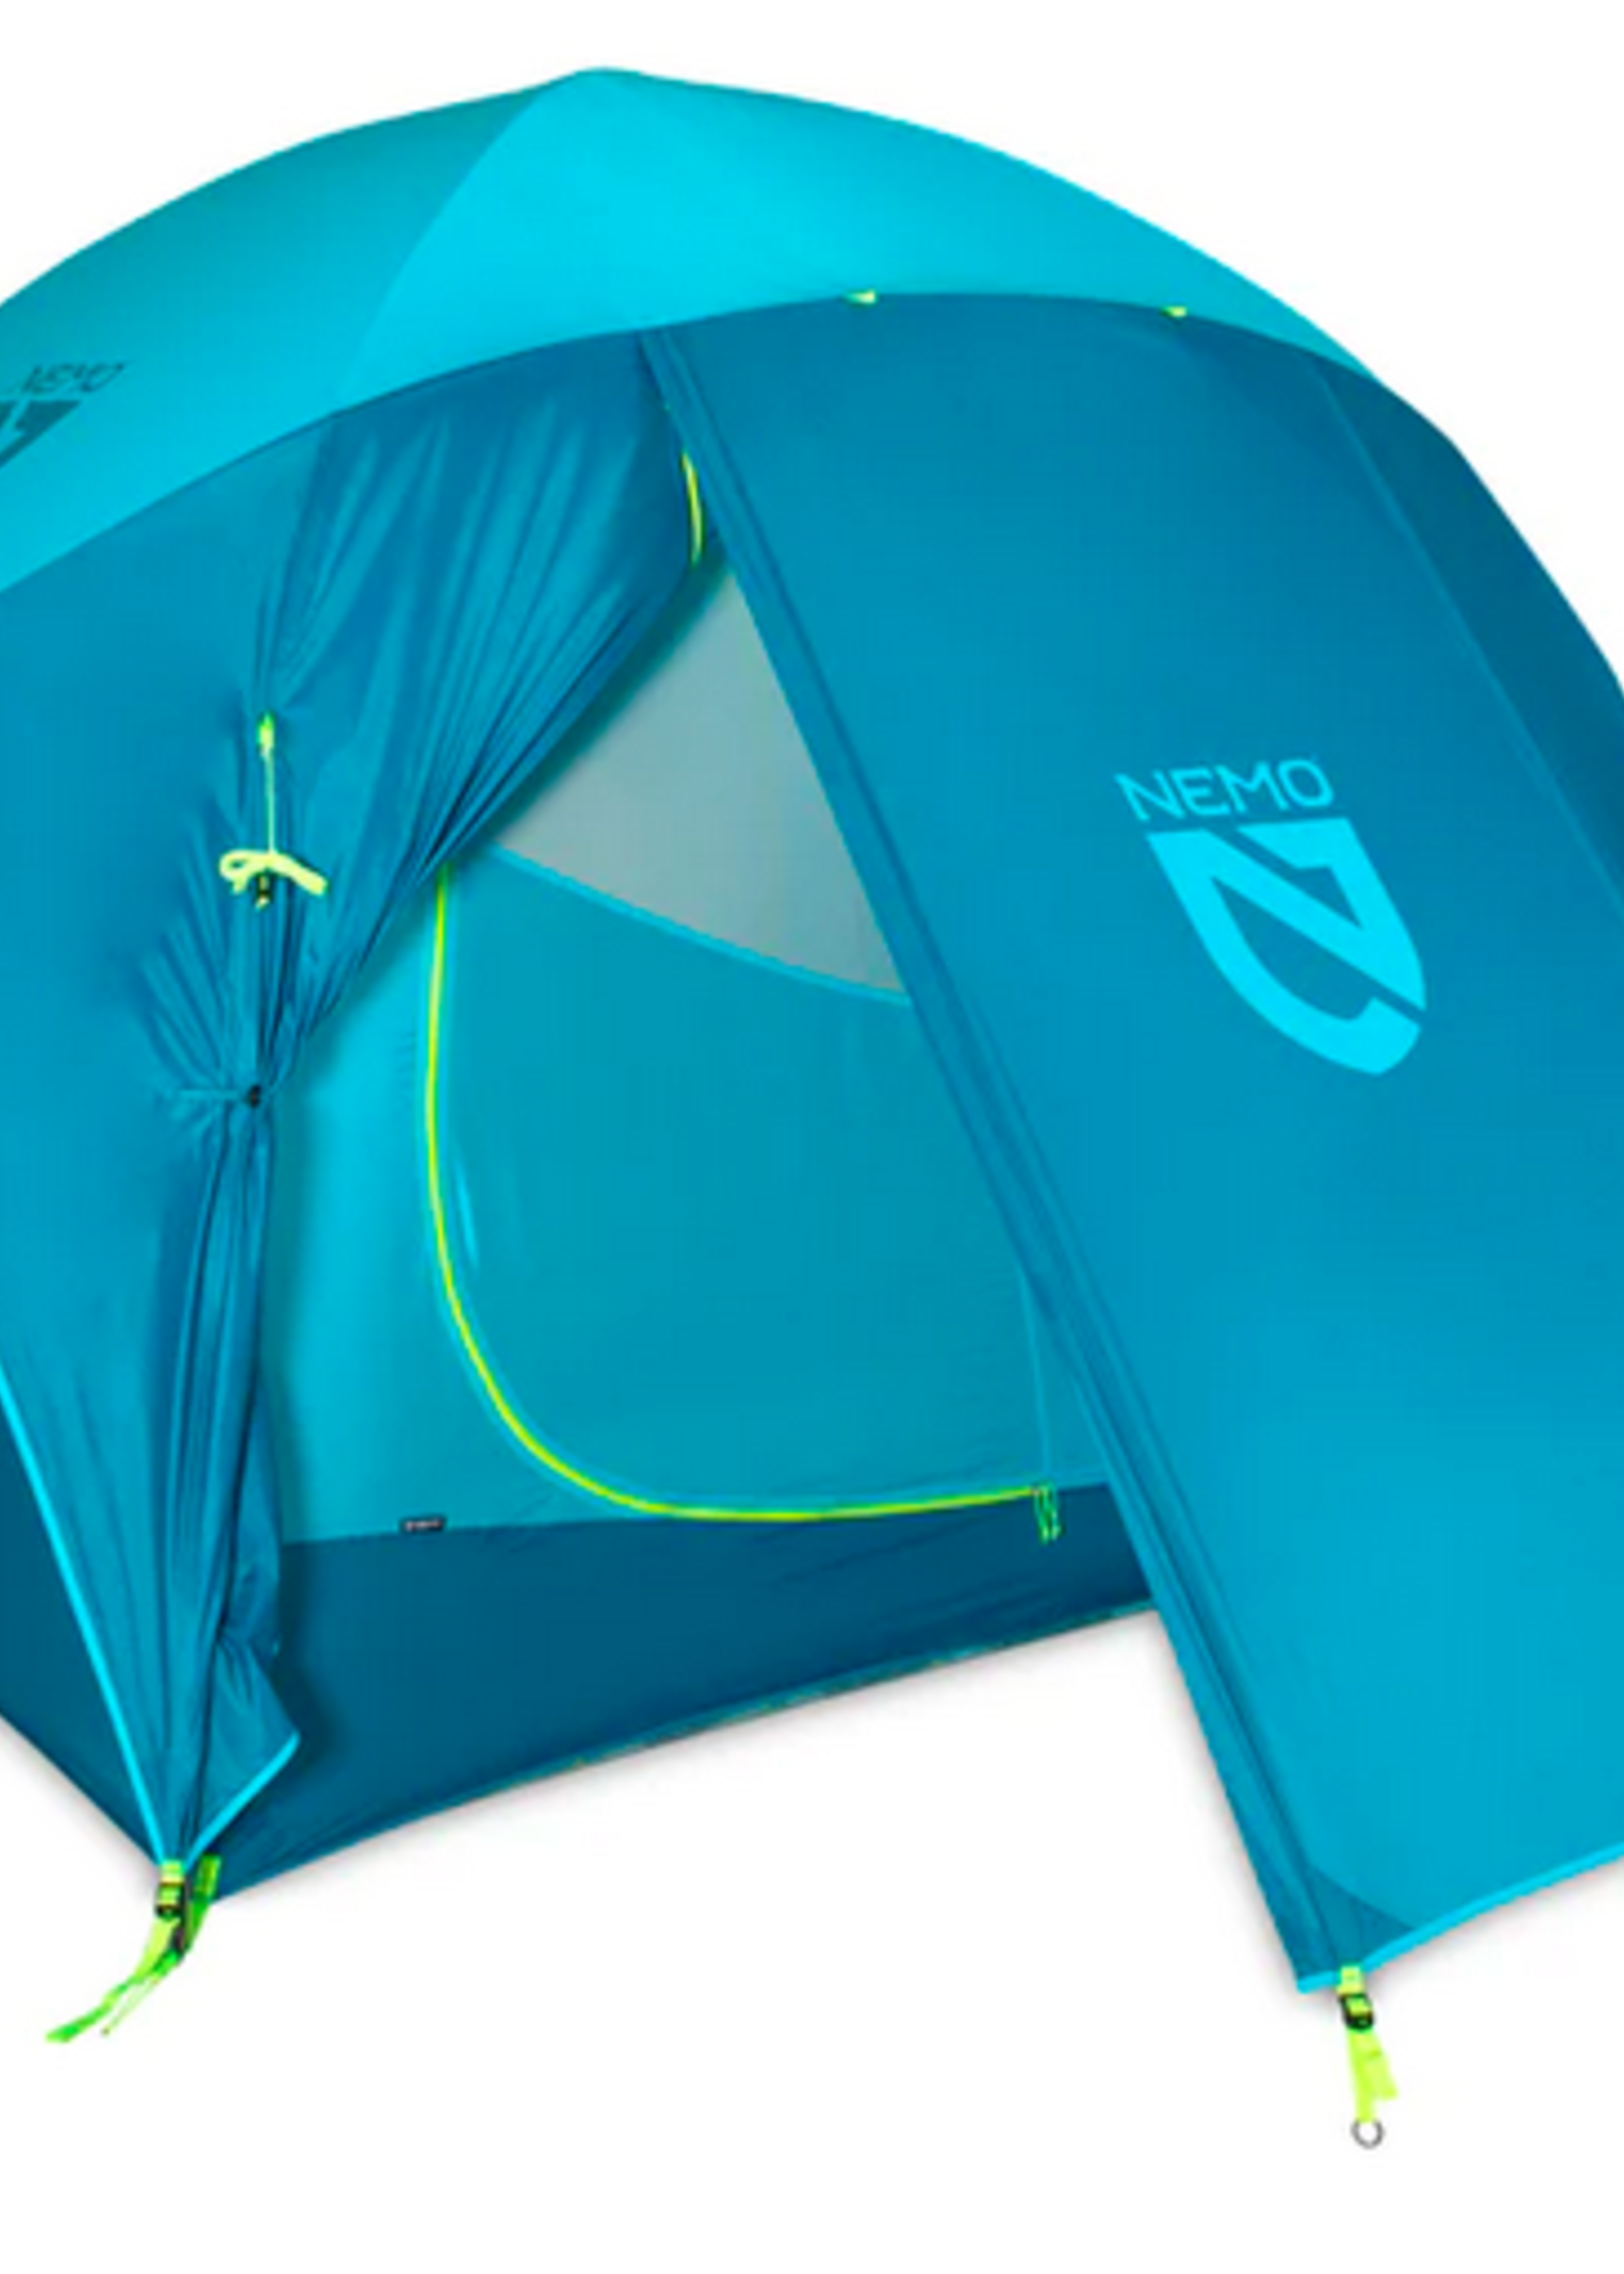 Nemo Equipment Aurora 3P (Surge) Tent